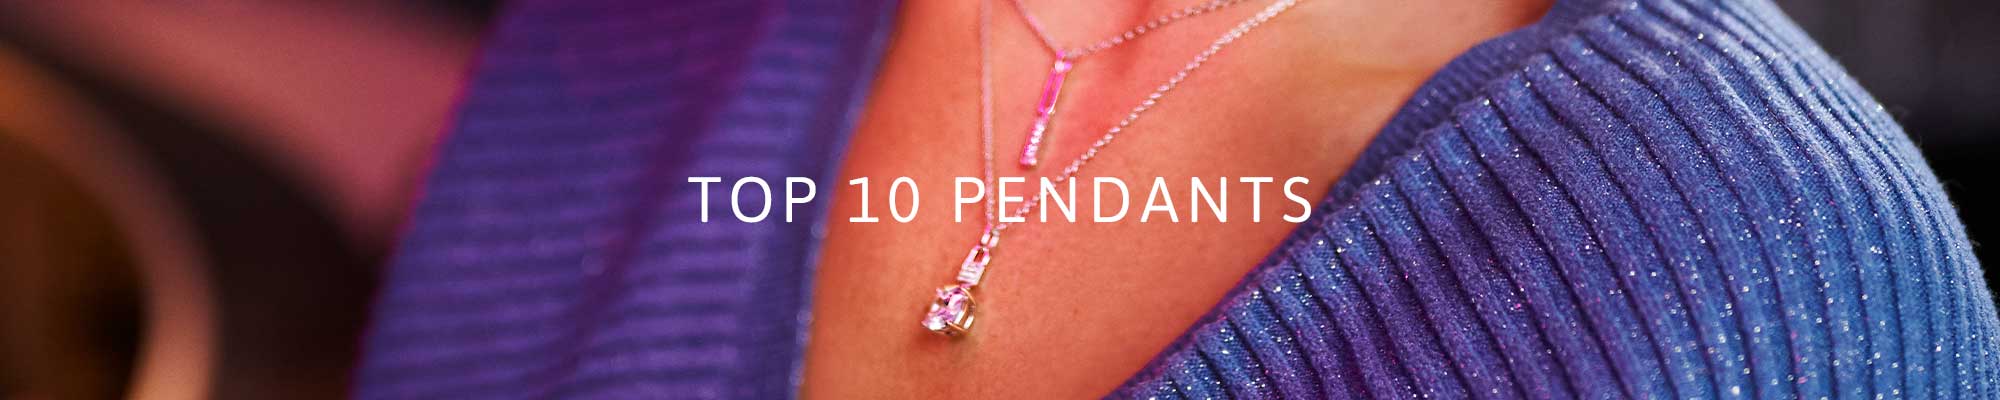 Top 10 Pendants